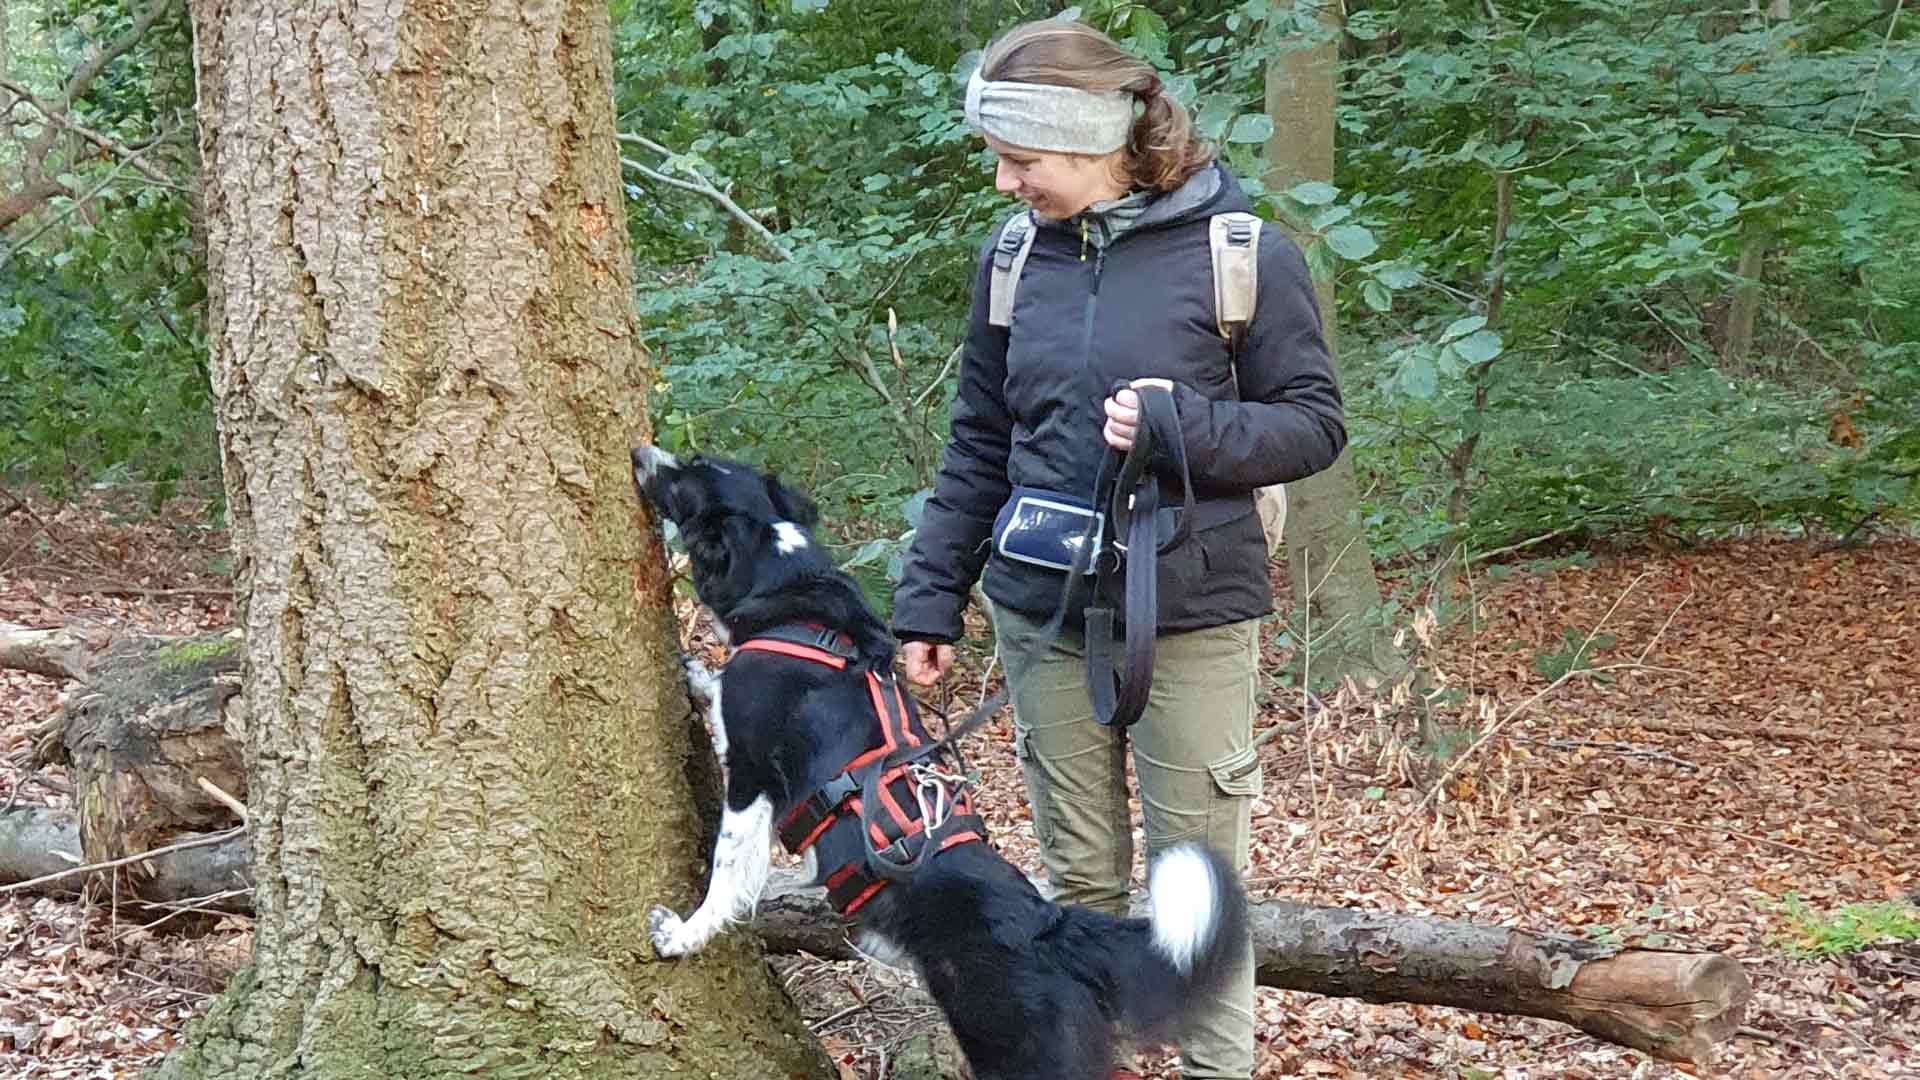 Hund sucht im Wald am Baum nach Leckerchen